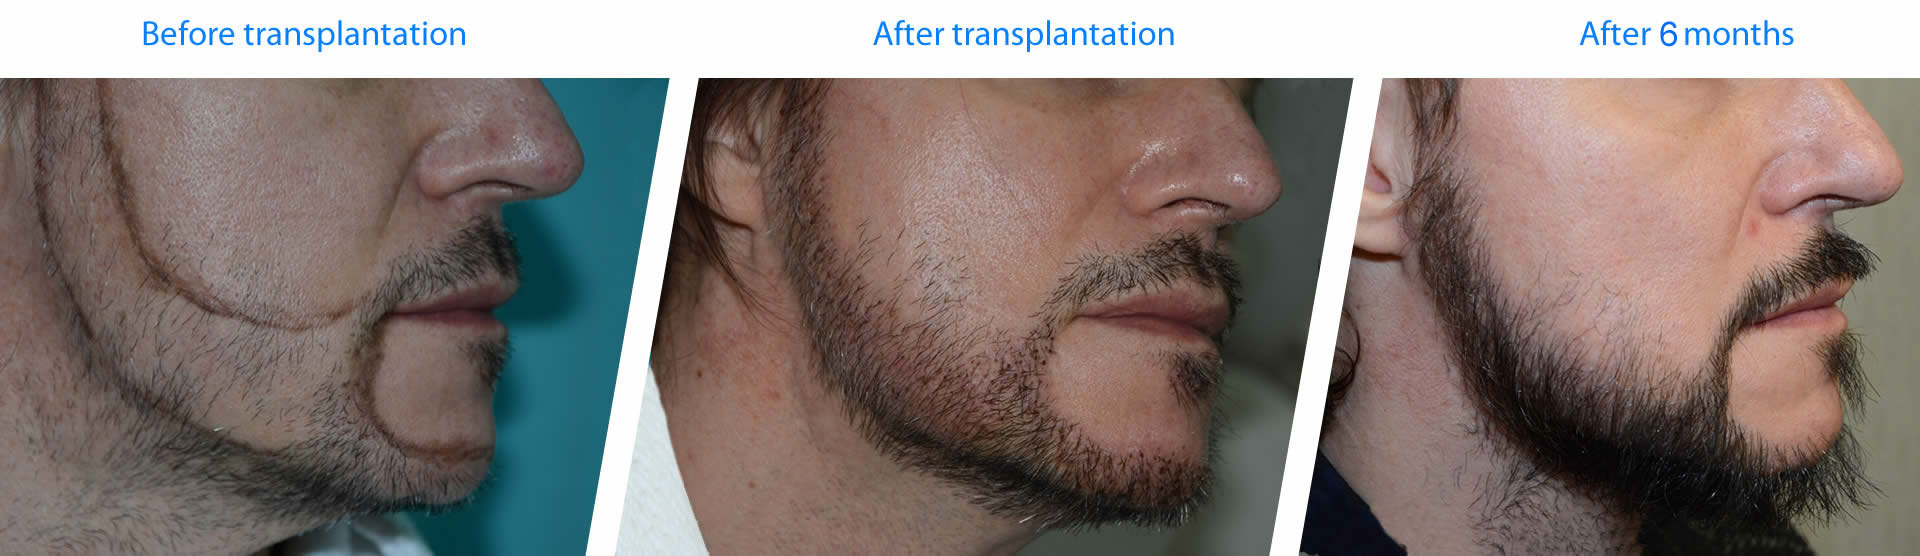 exemples et résultats de greffe de barbe